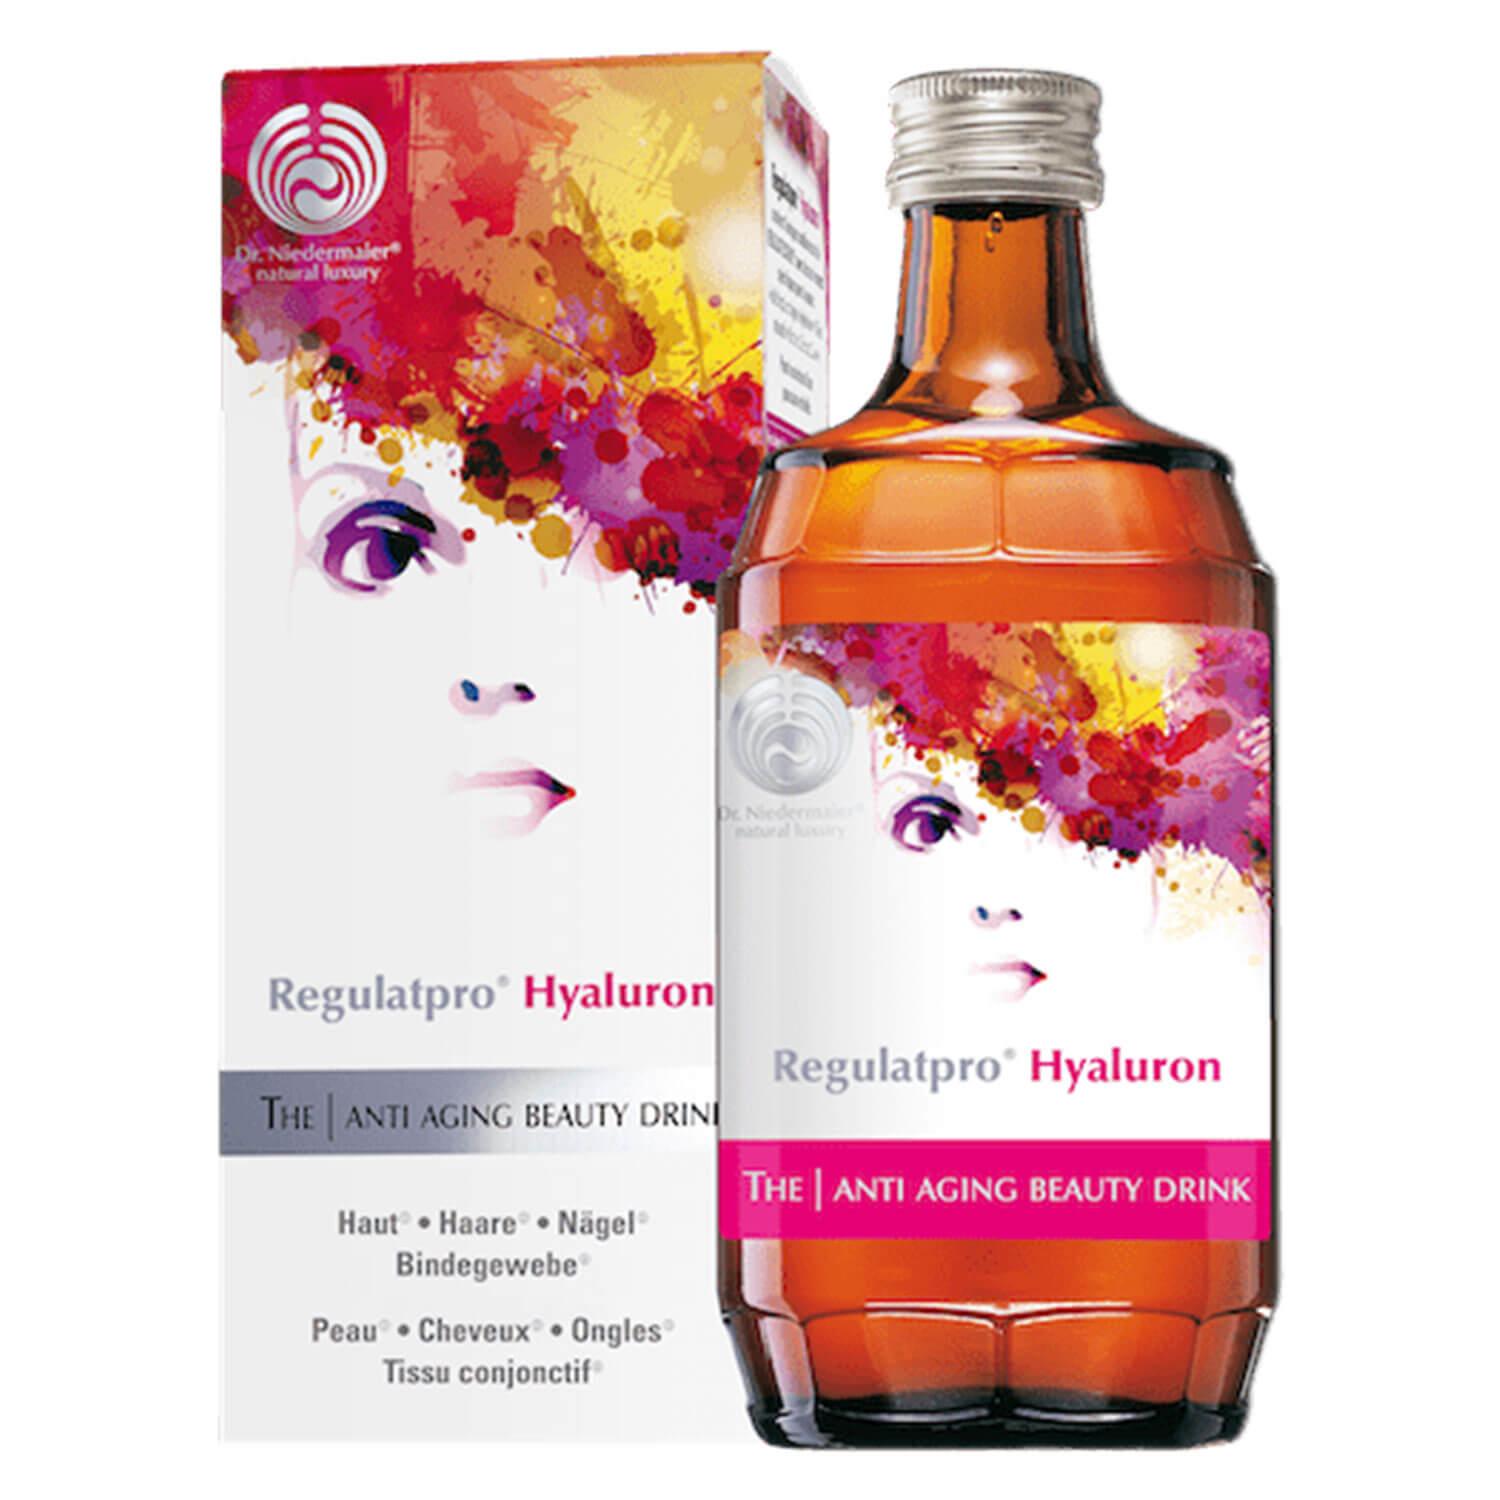 Regulatpro® - Hyaluron The Anti Aging Beauty Drink